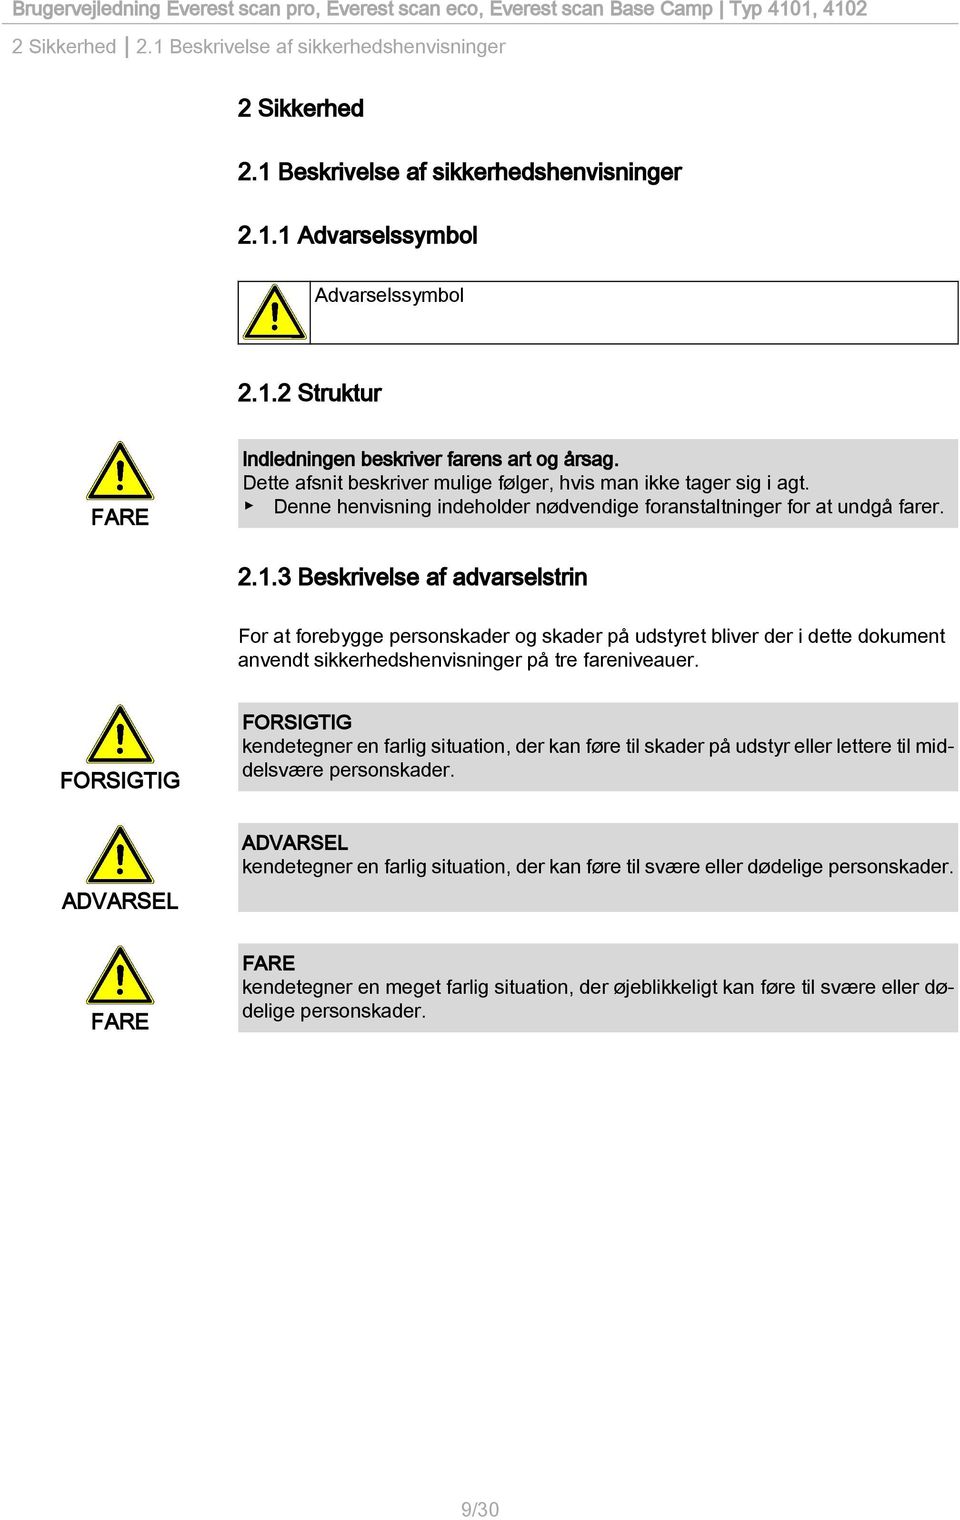 3 Beskrivelse af advarselstrin For at forebygge personskader og skader på udstyret bliver der i dette dokument anvendt sikkerhedshenvisninger på tre fareniveauer.